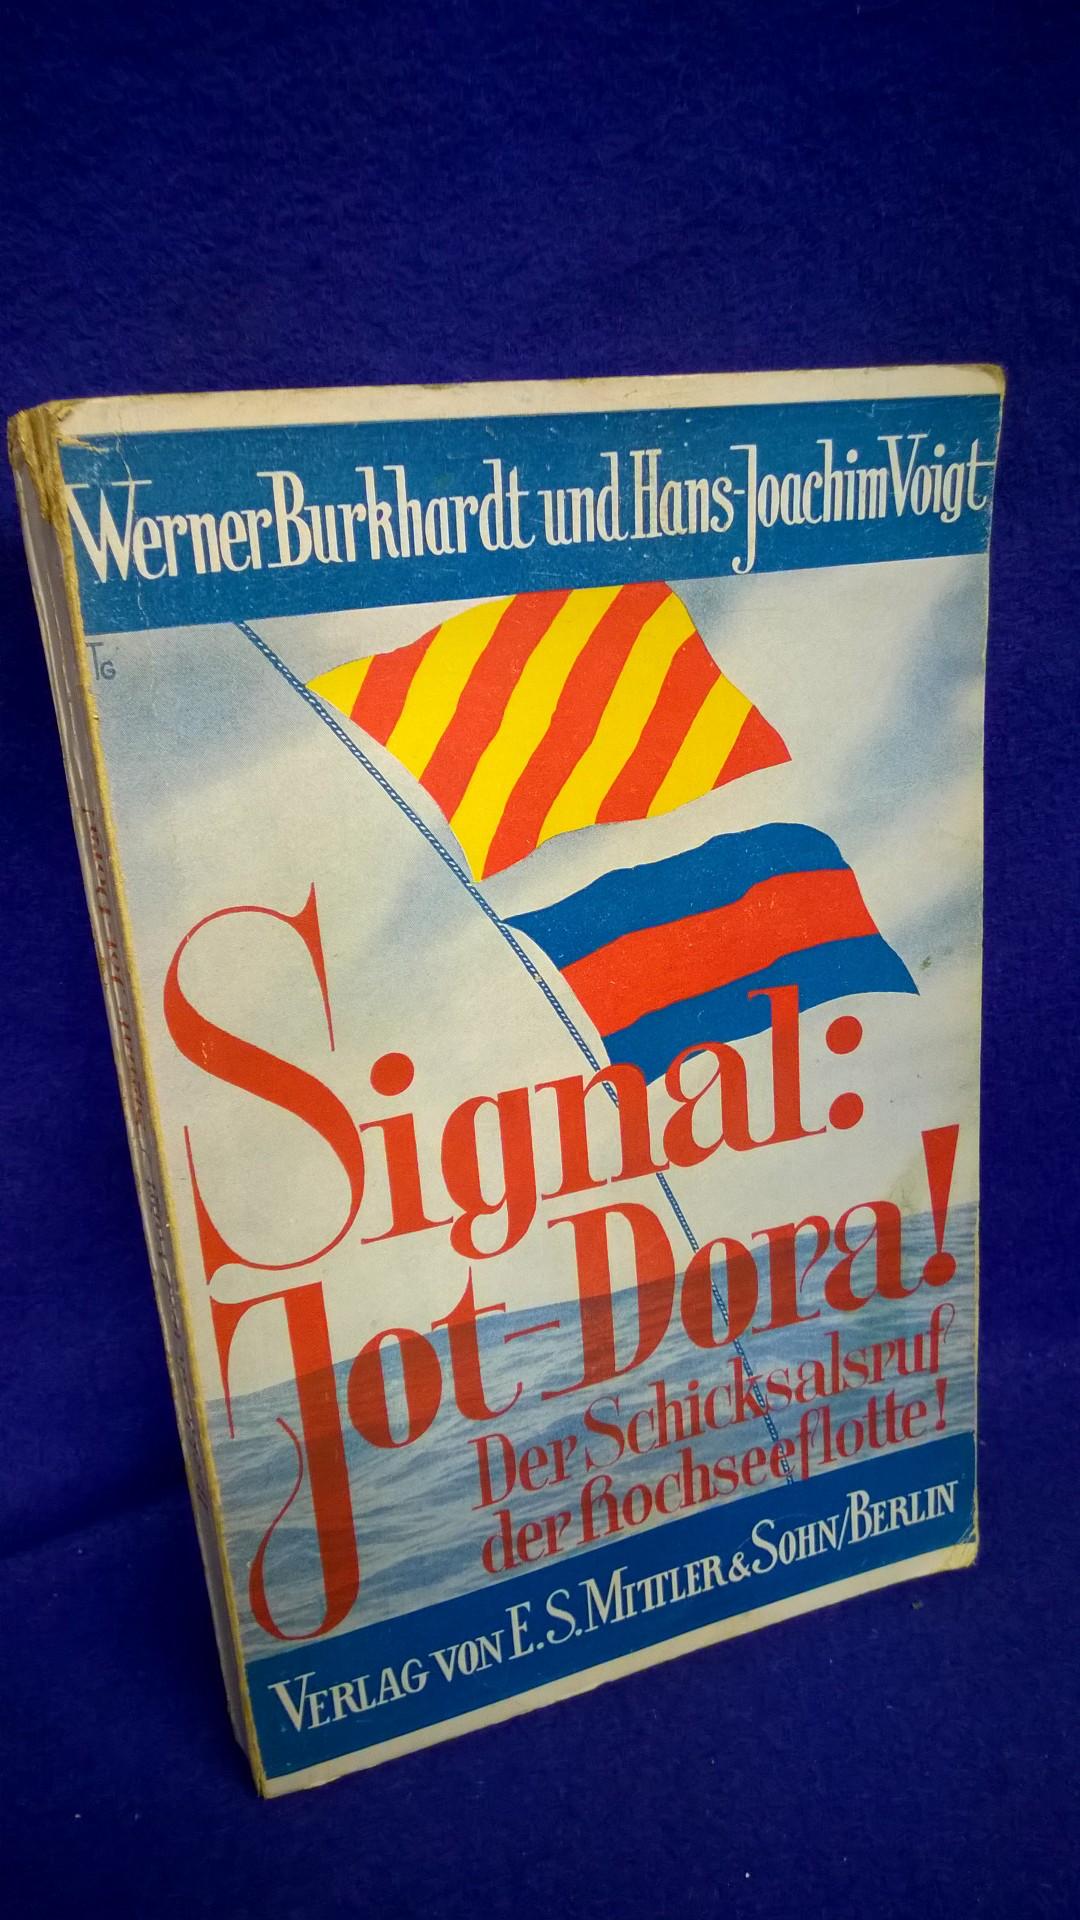 Signal: Jot - Dora ! Der Schicksalsruf der Hochseeflotte. 